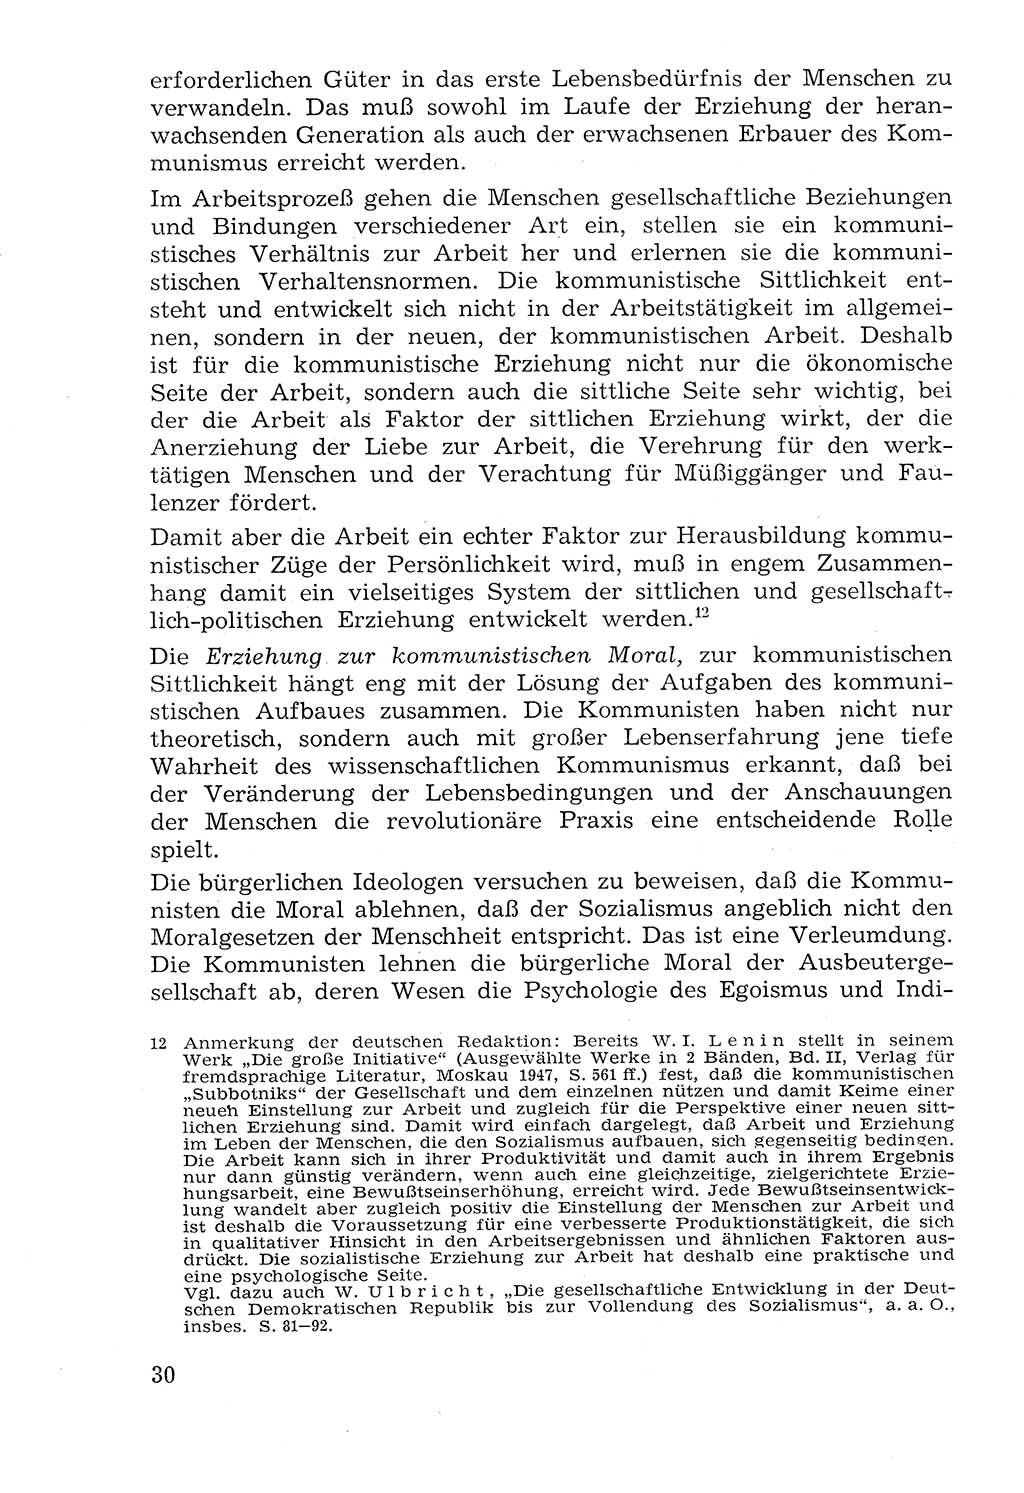 Lehrbuch der Strafvollzugspädagogik [Deutsche Demokratische Republik (DDR)] 1969, Seite 30 (Lb. SV-Pd. DDR 1969, S. 30)